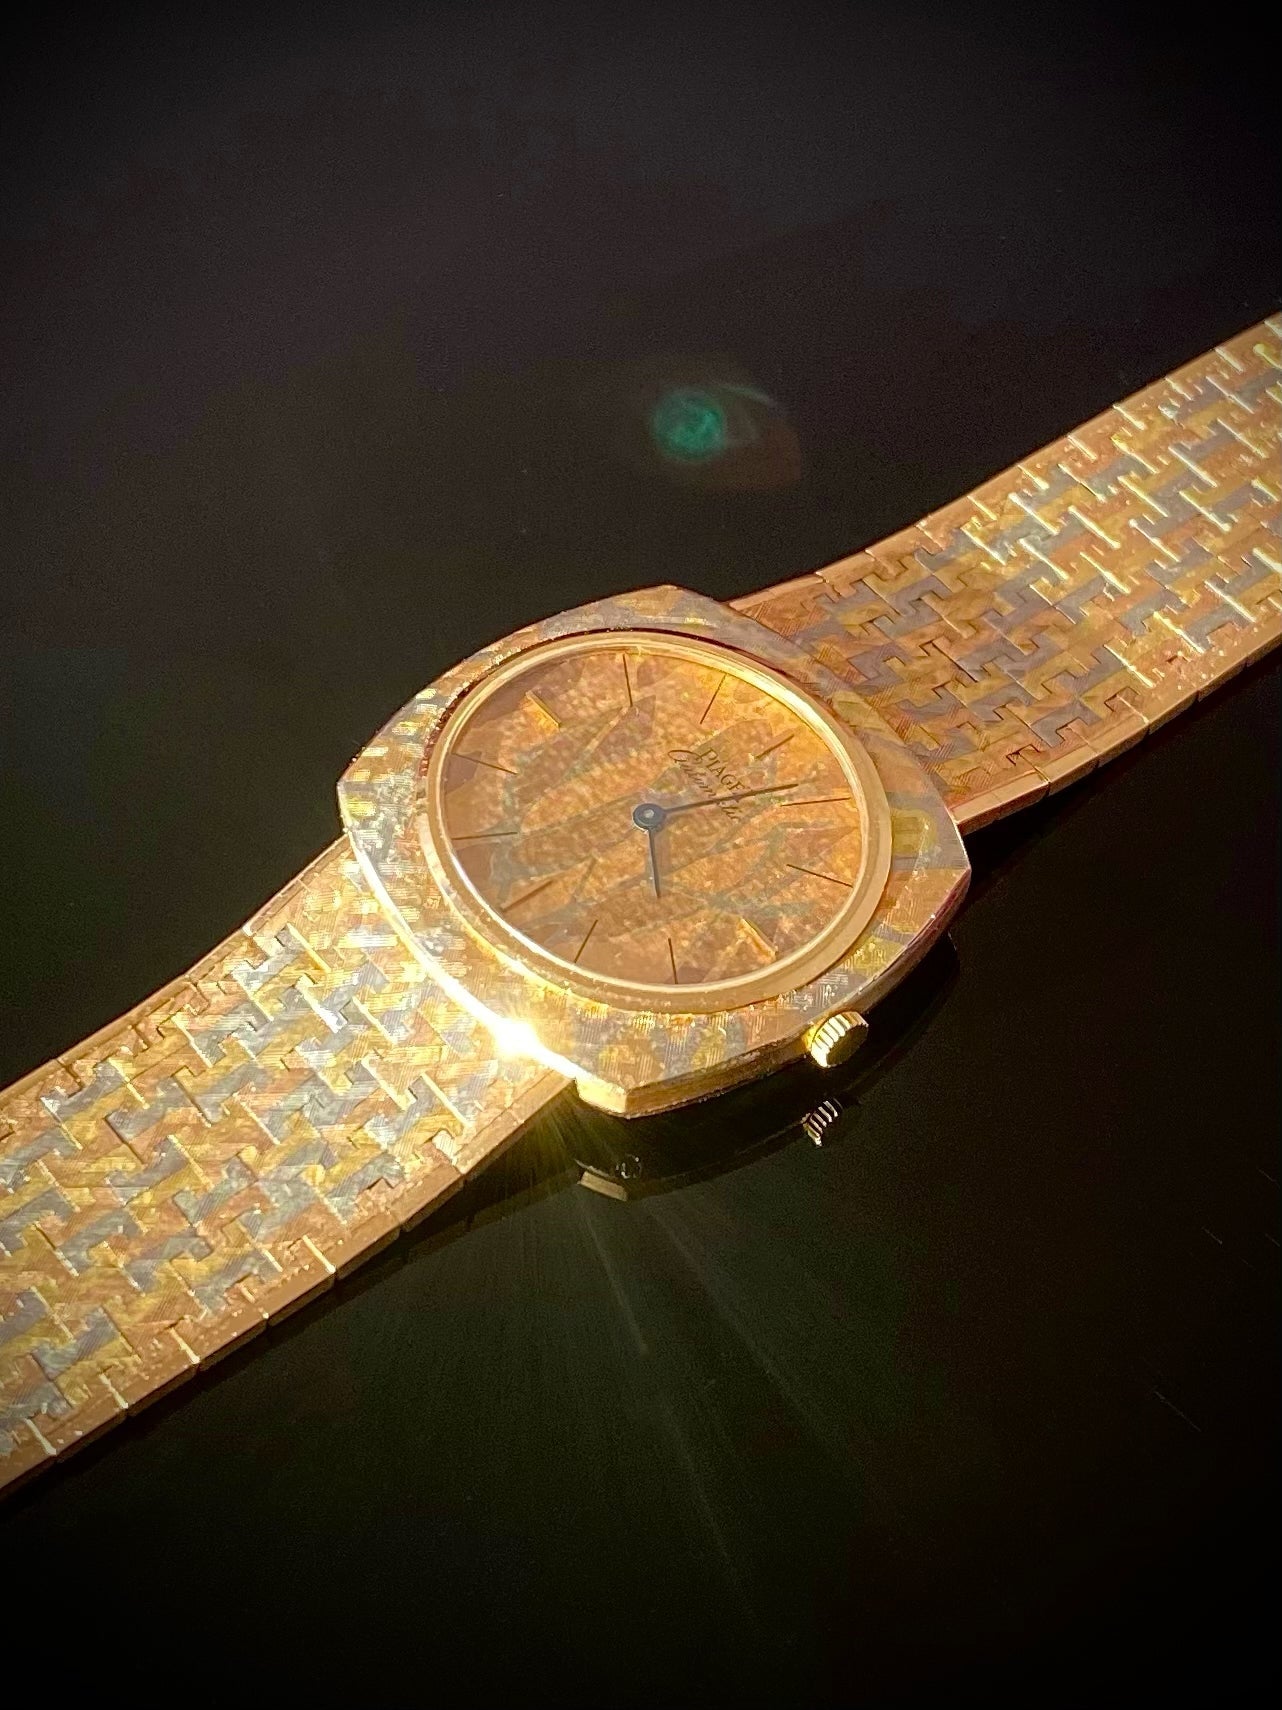 RARE Piaget Tricolour Three Colour Cushion Shape 18K Gold Mens Vintage Watch - PM Vintage Watches - Piaget